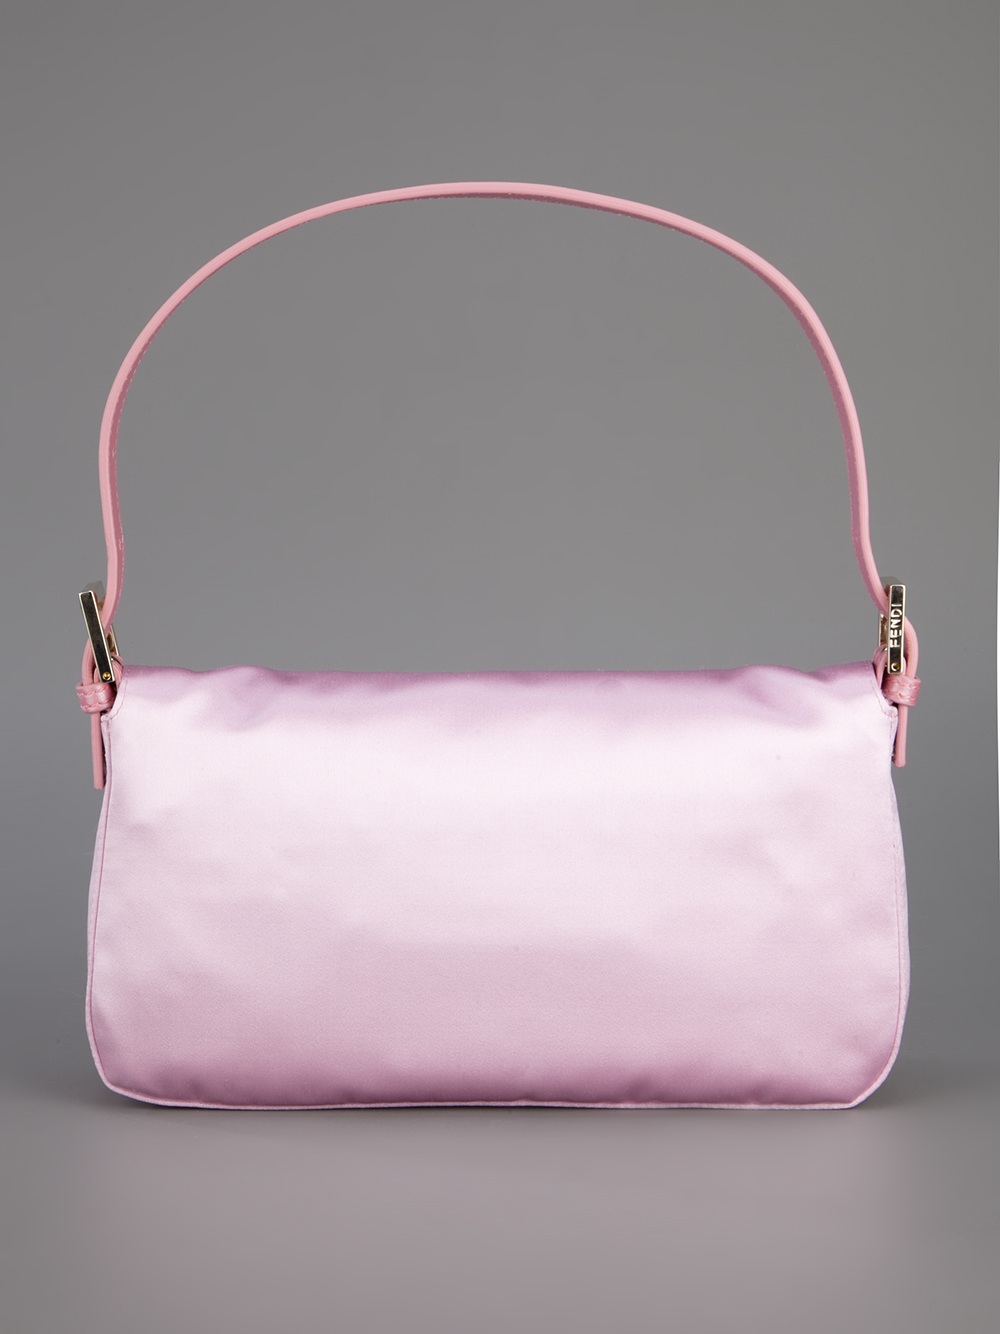 Fendi Baguette Shoulder Bag in Pink & Purple (Pink) - Lyst